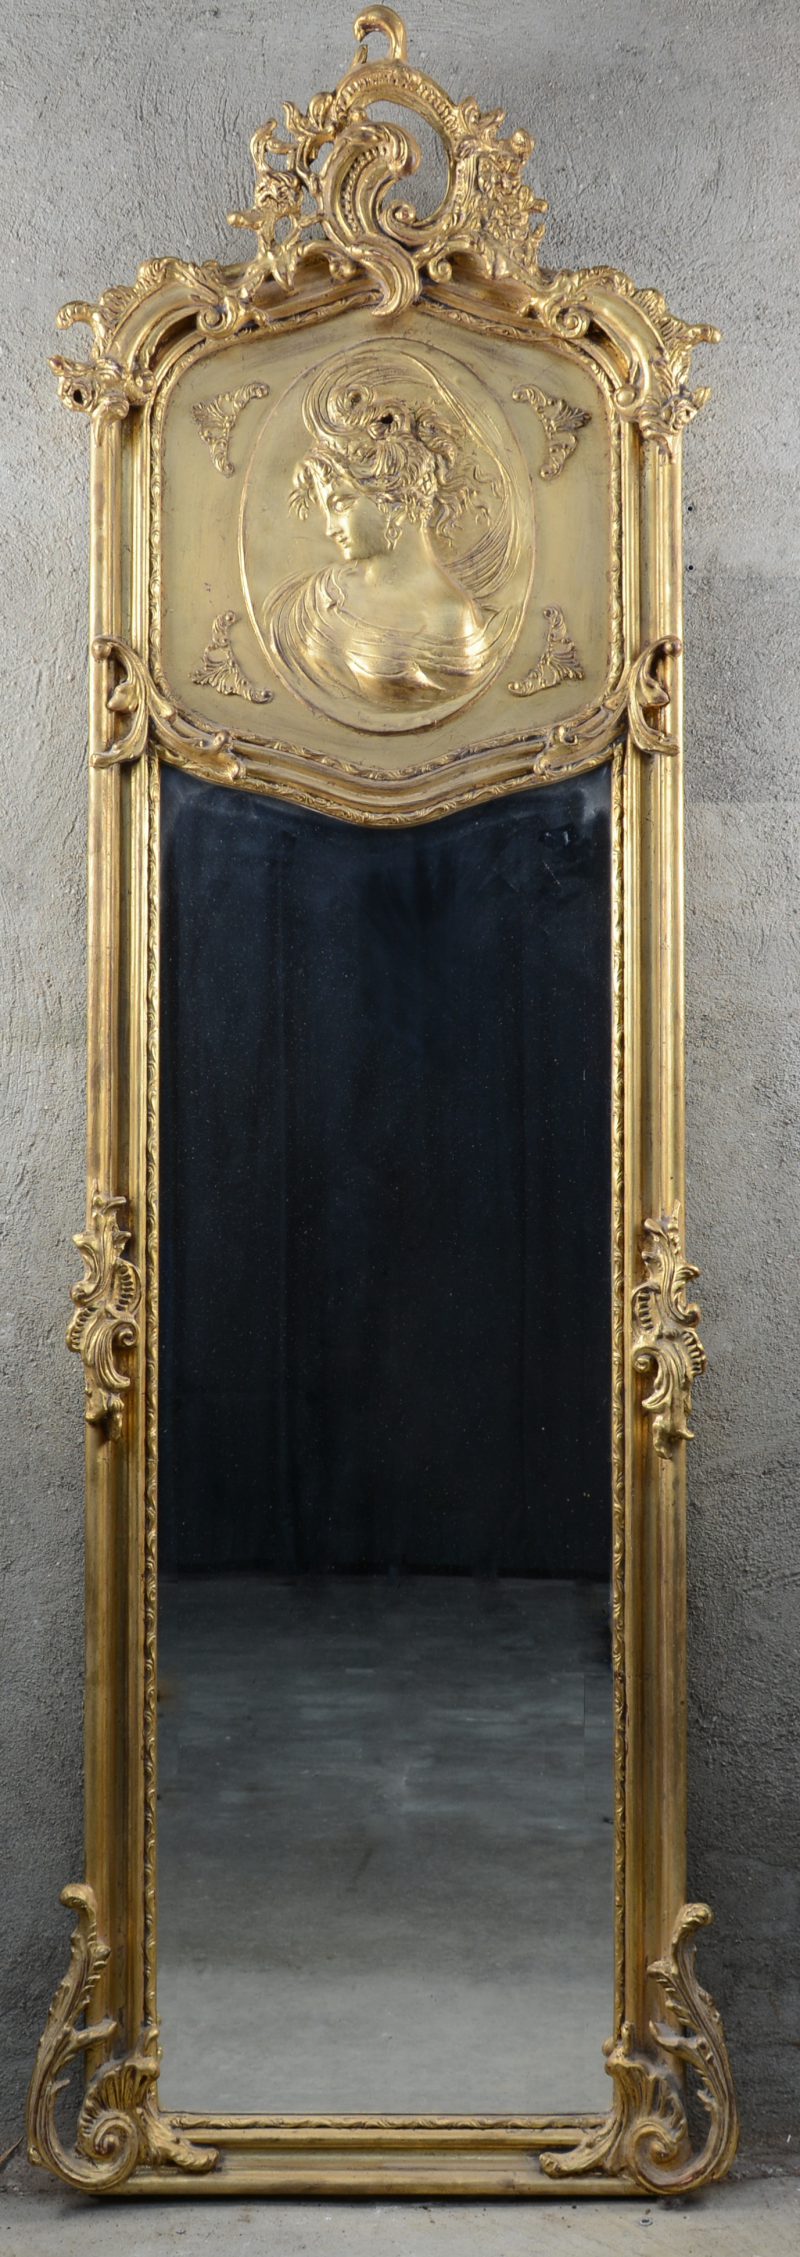 Een verguld houten spiegel in Lodewijk XV-stijl, versierd met een vrouwenprofiel in reliëf.